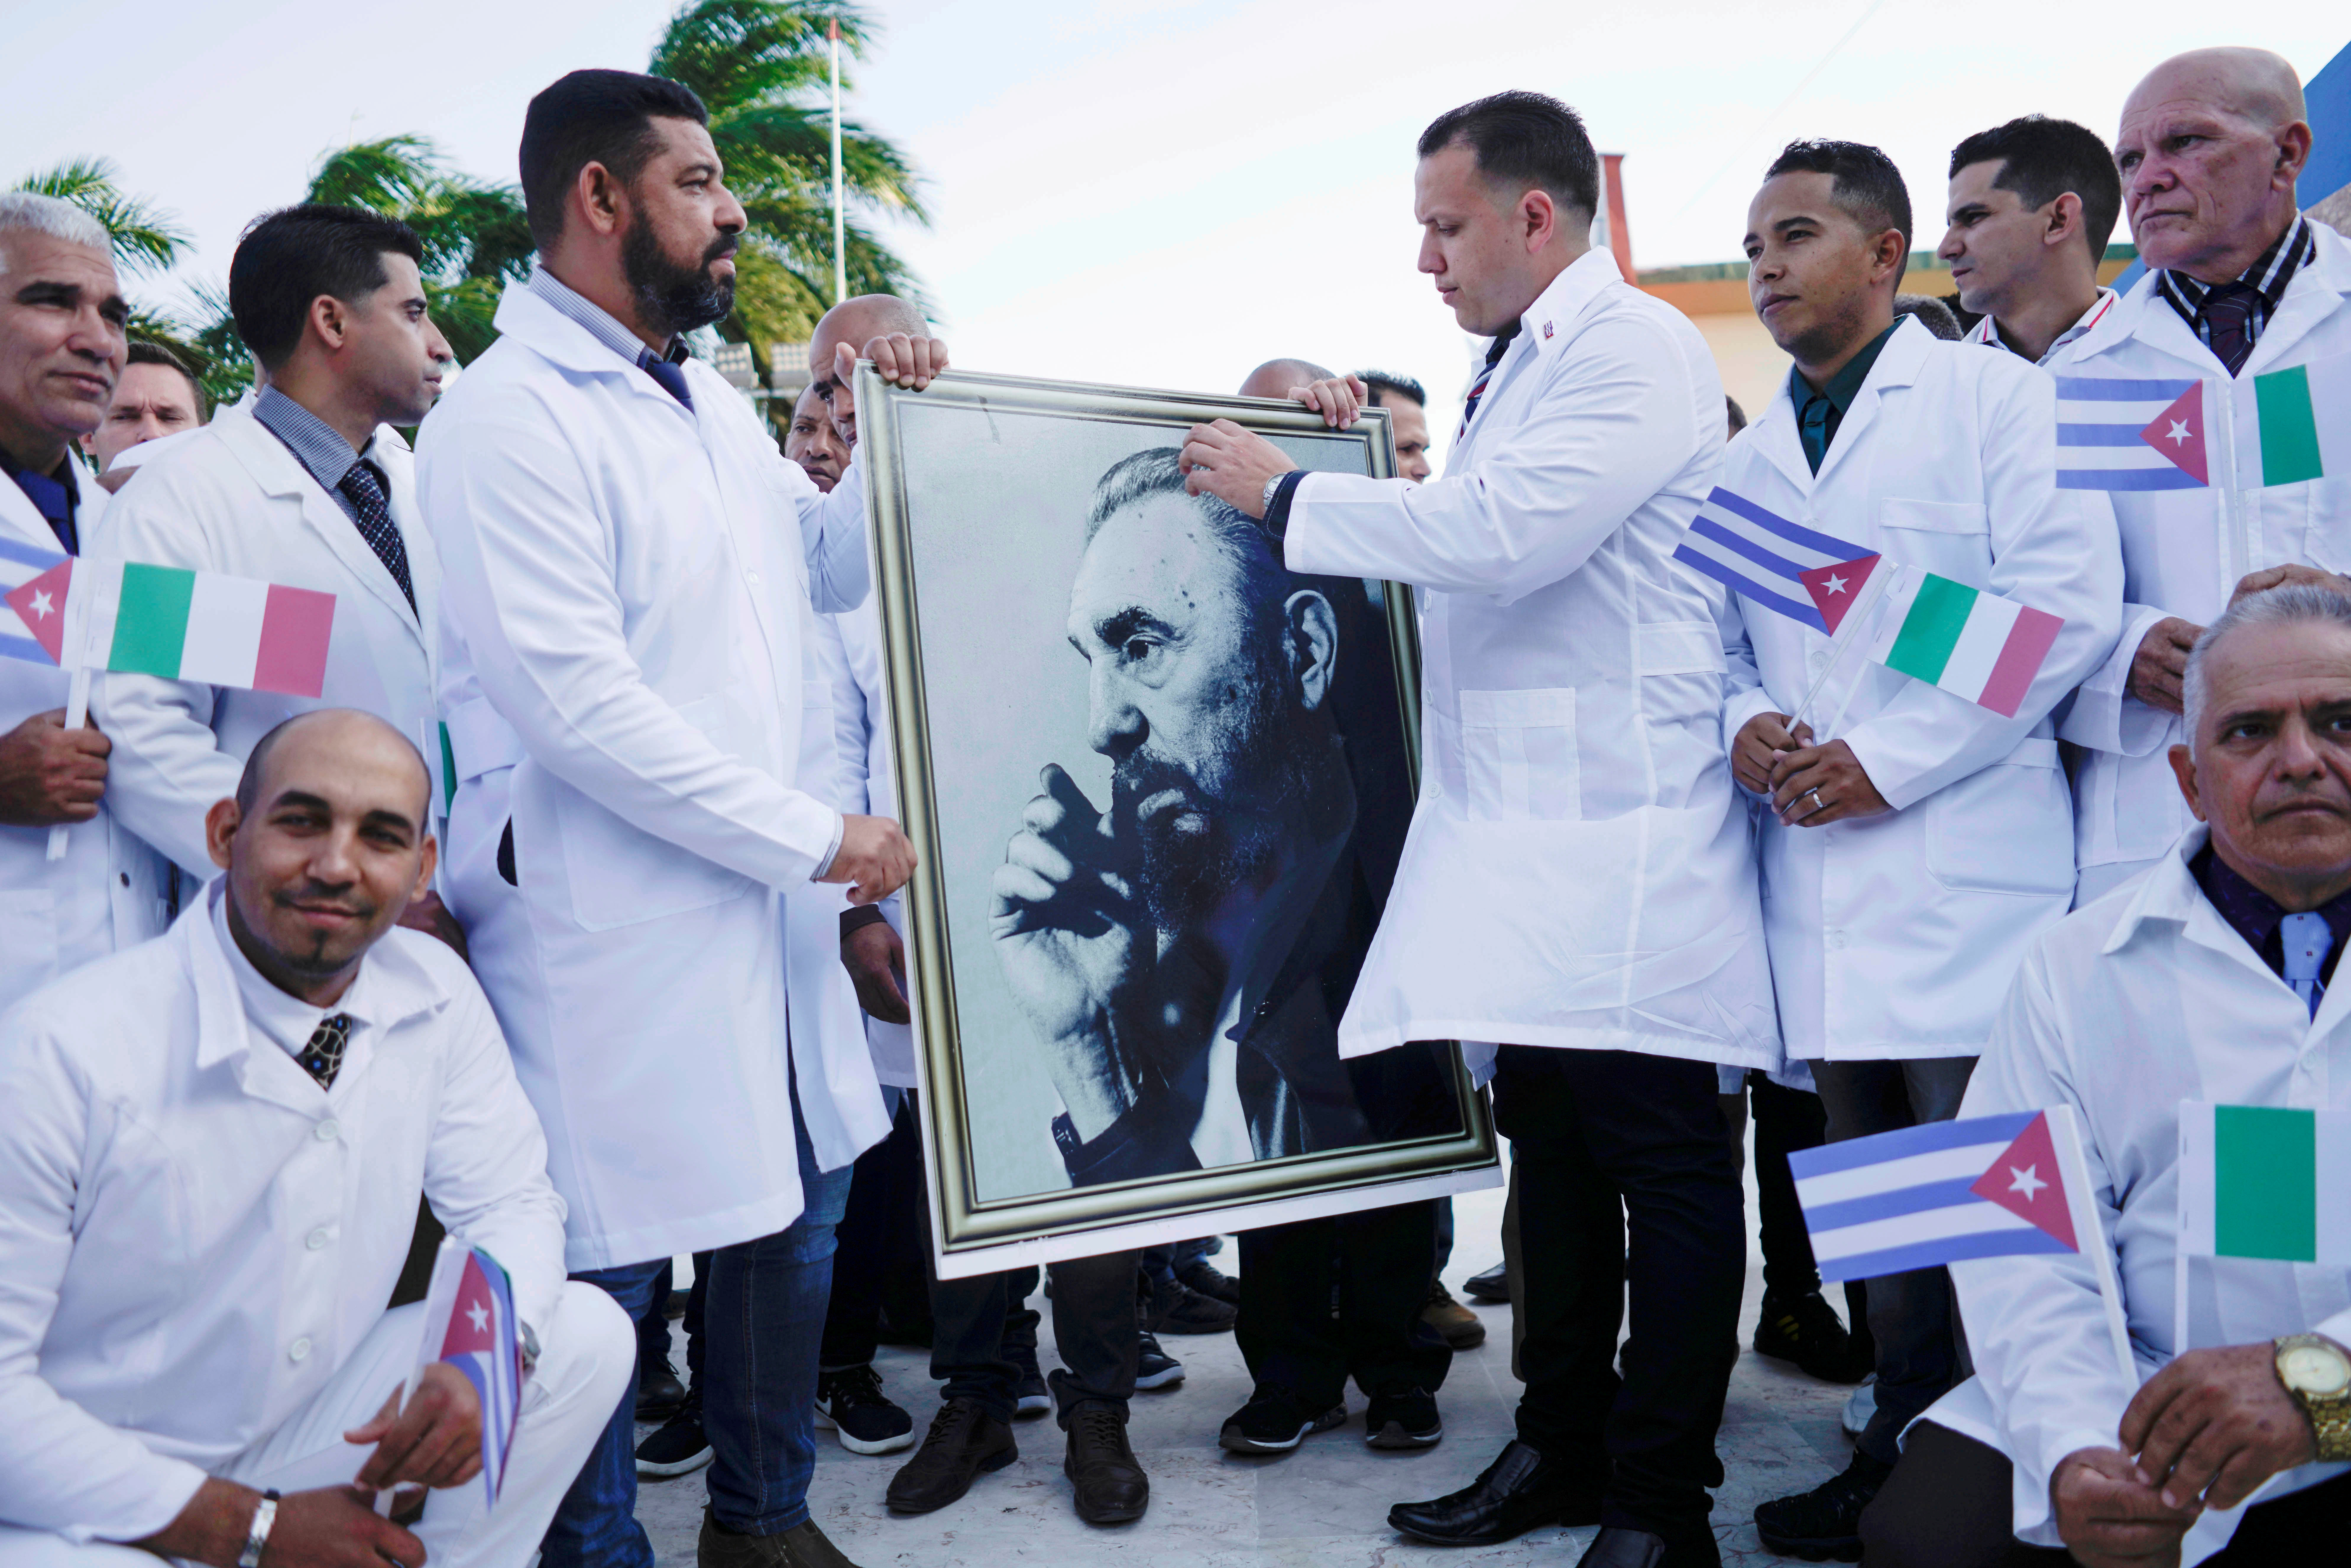 Una brigada de médicos cubanos rinde homenaje al líder revolucionario, Fidel Castro. (FOTO: REUTERS/Alexandre Meneghini)